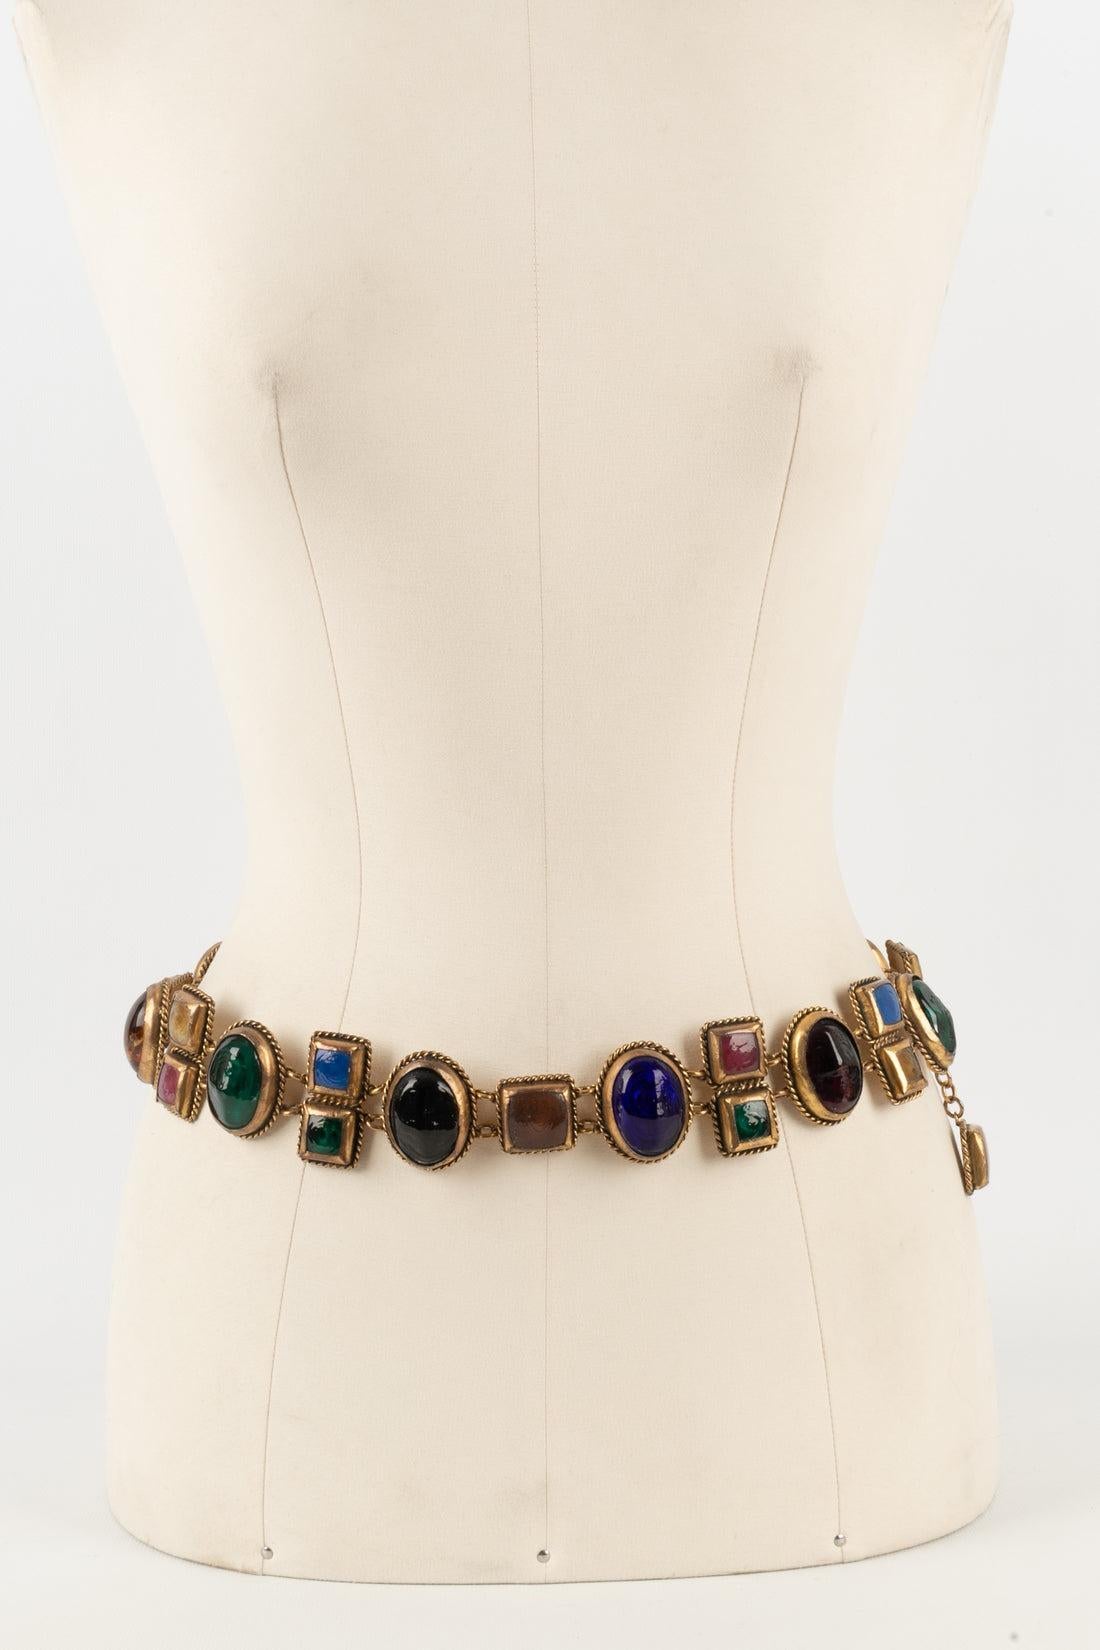 Chanel - Impressionnante ceinture en métal doré inspirée du style byzantin, ornée de cabochons en pâte de verre multicolore. Collection Haute Couture. Création non signée de l'atelier Denez pour la maison Chanel.

Informations complémentaires